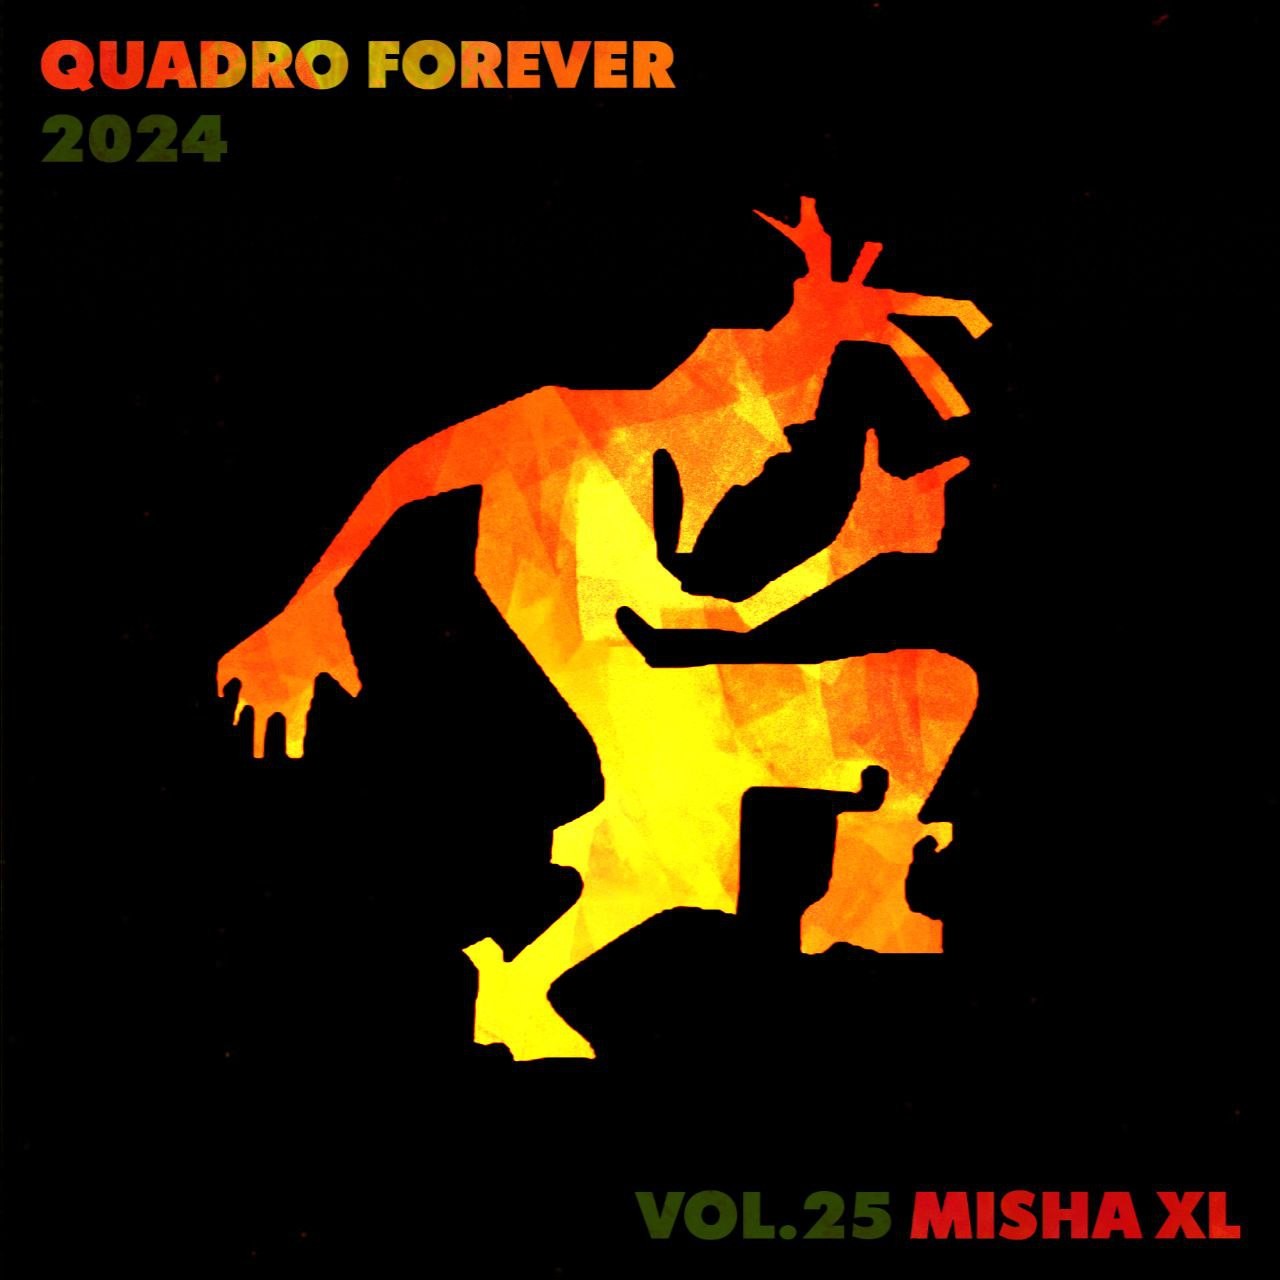 MISHA XL - QUADRO FOREVER vol.25 - LIVE MIX #25